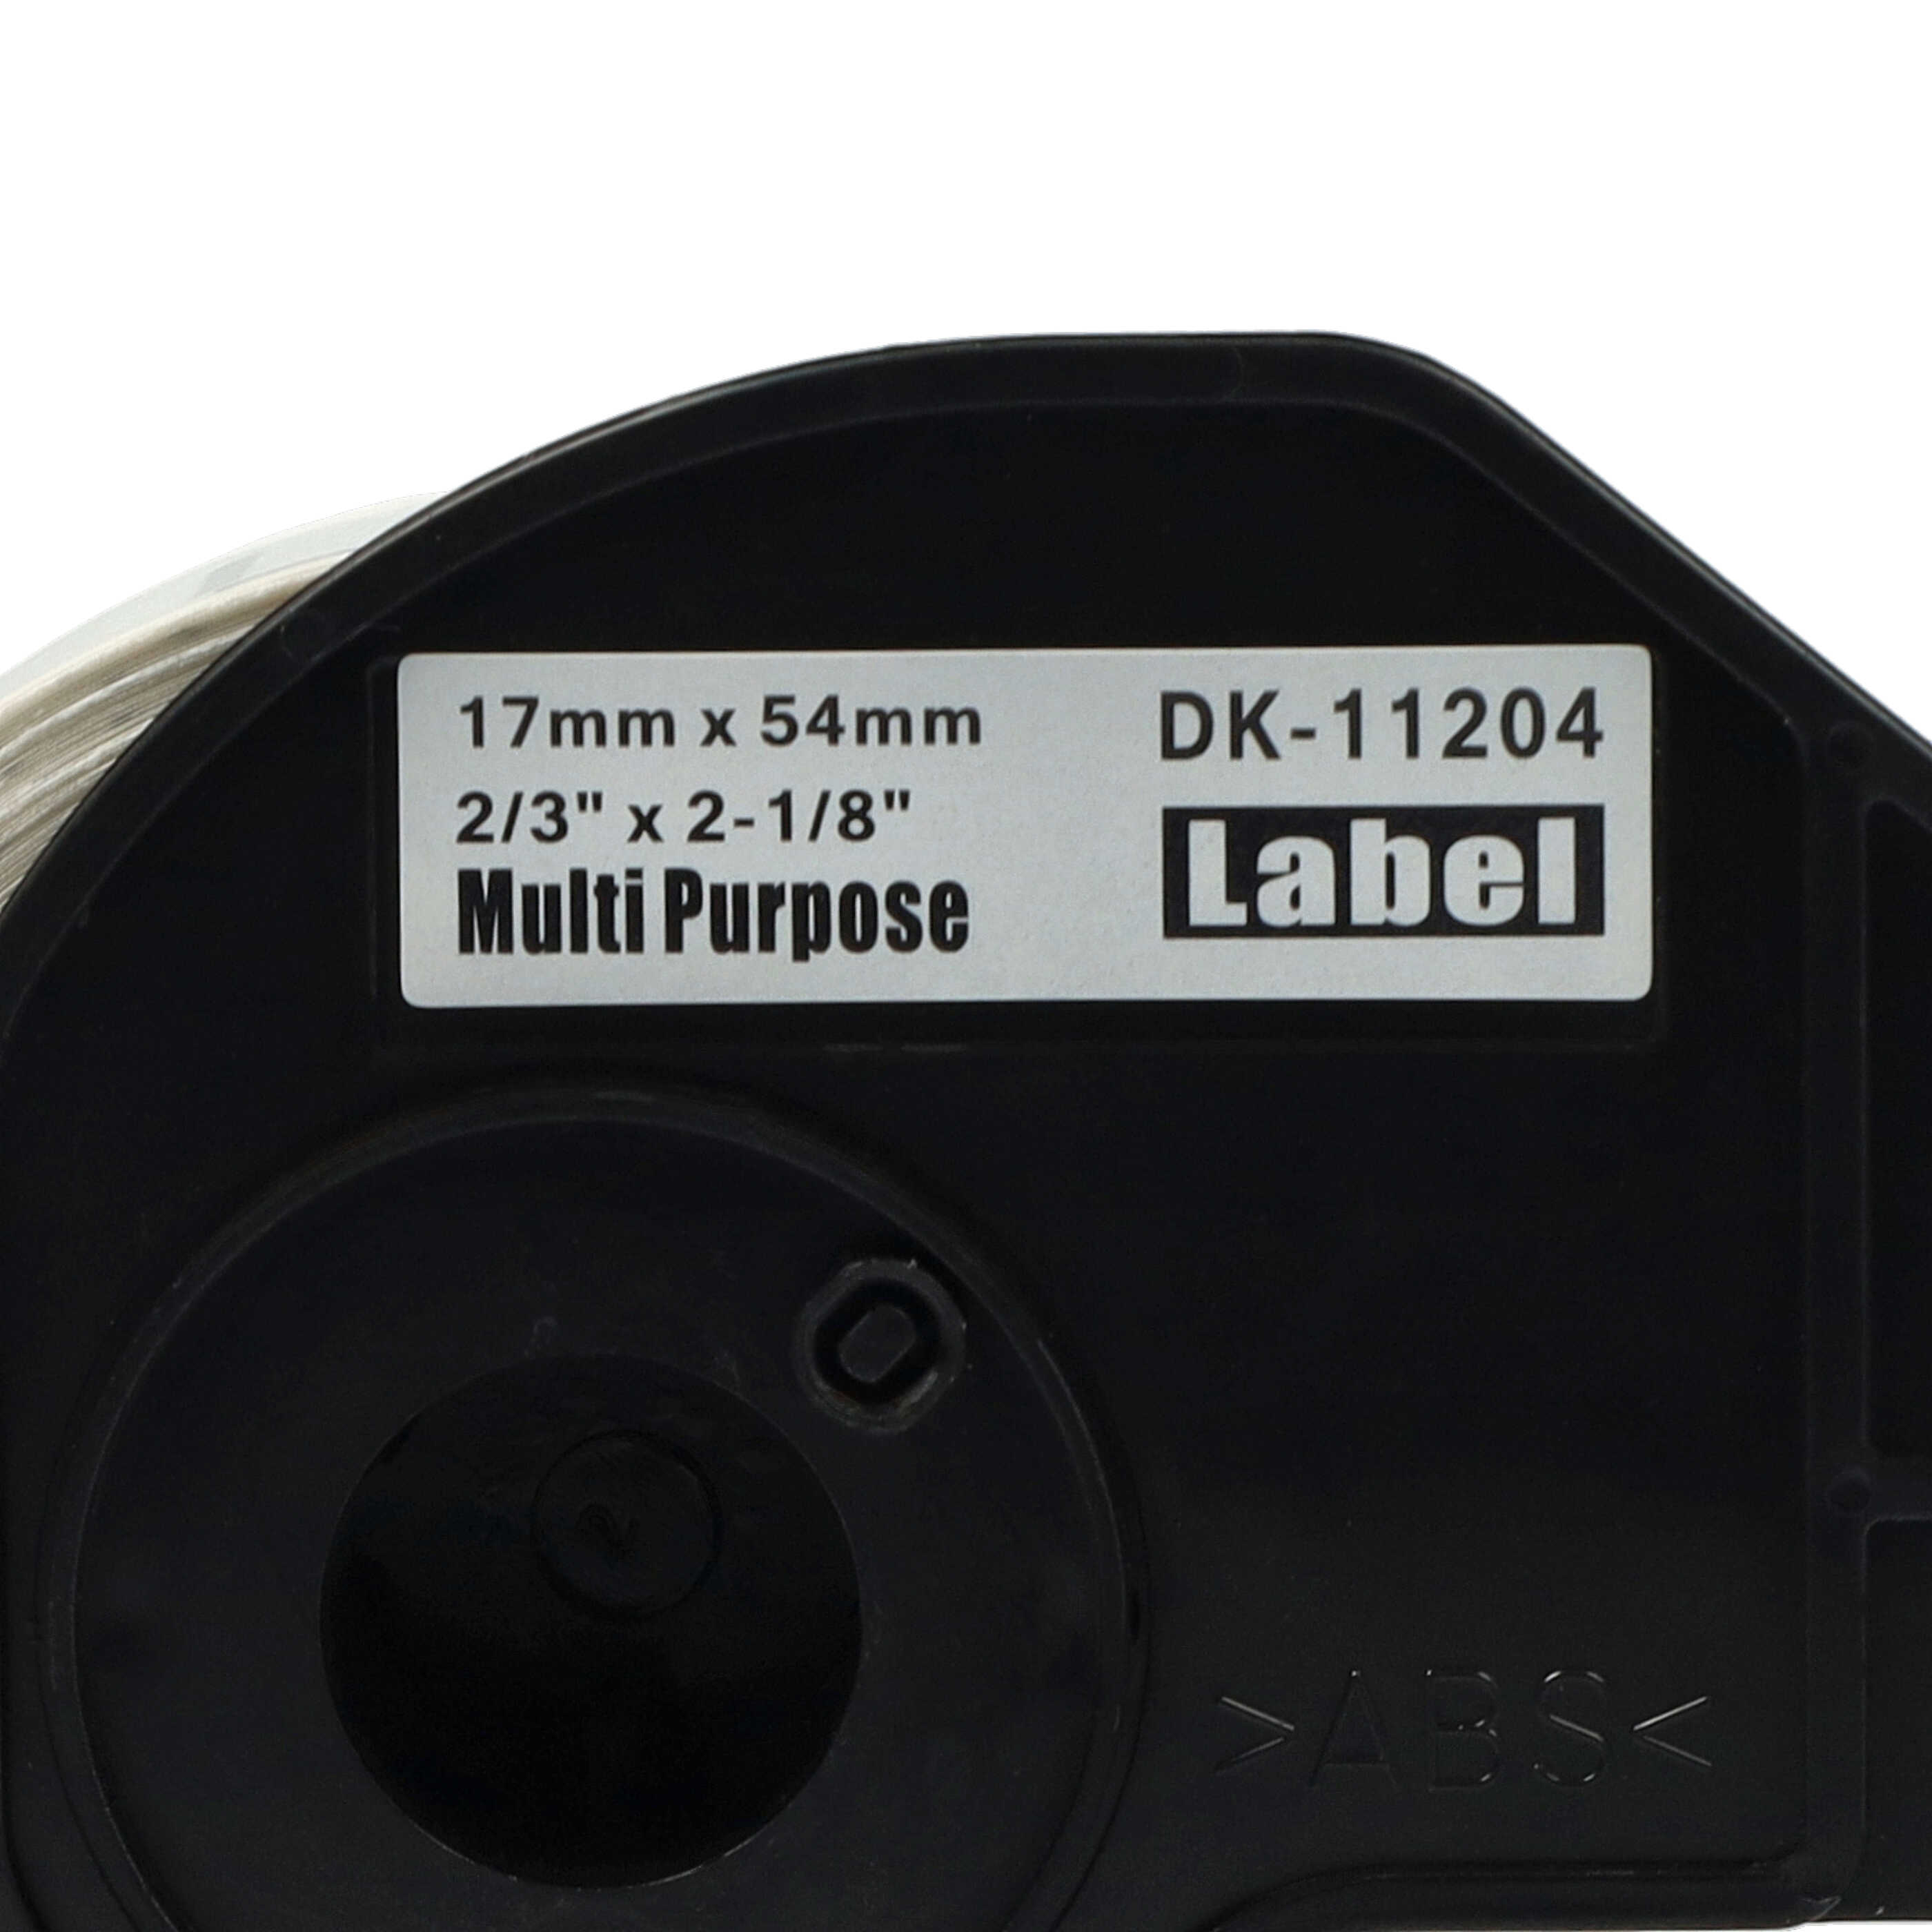 10x Etiketten als Ersatz für Brother DK-11204 für Etikettendrucker - 17mm x 54mm + Halter